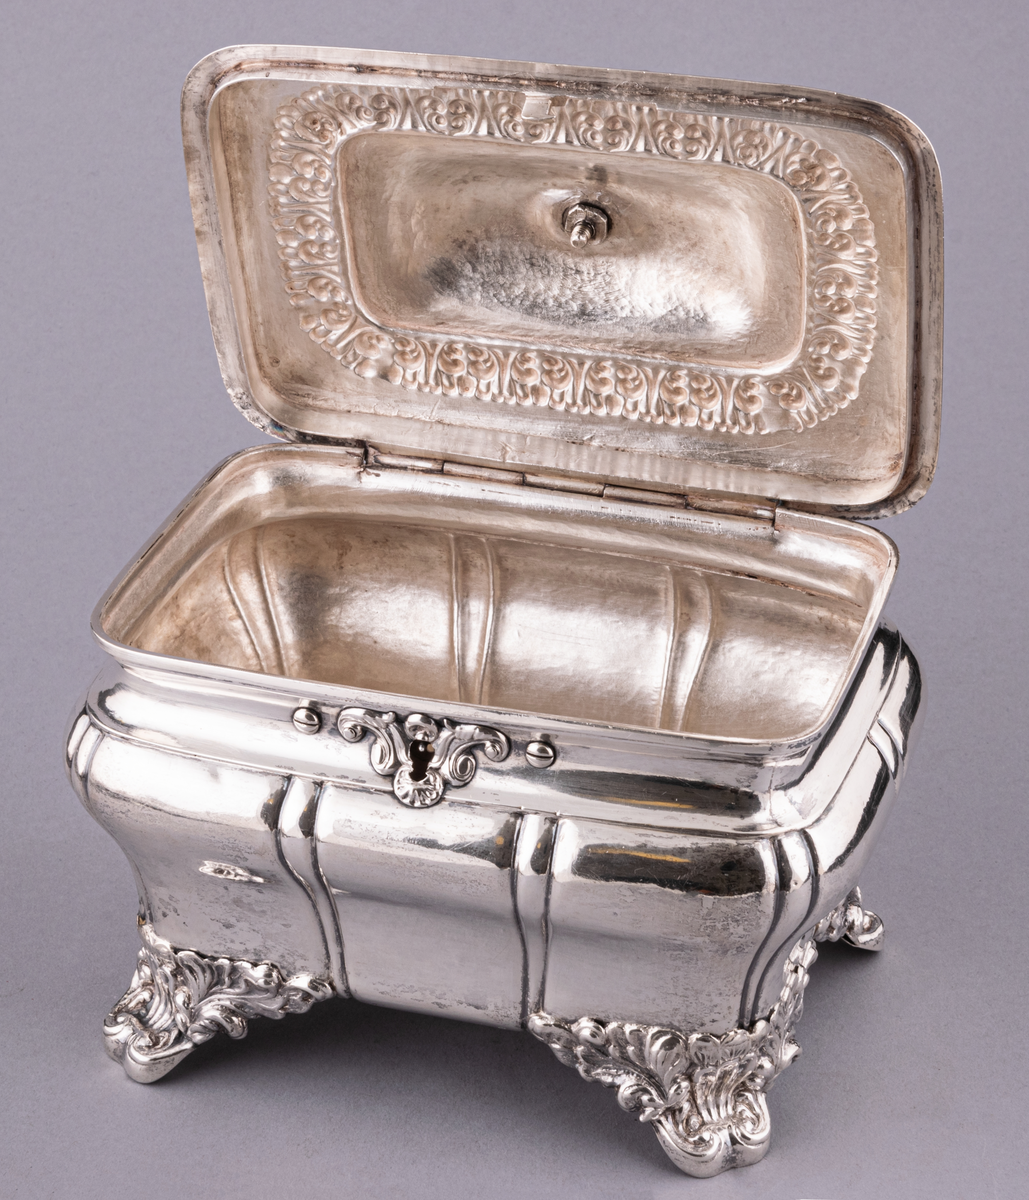 Sockerskrin av silver, fyrsidigt med lock på gångjärn, med nyckel. Uppstående ögleformigt handtag på lockets ovansida.
Stämplad:
E. G. Öström 
G.
V4